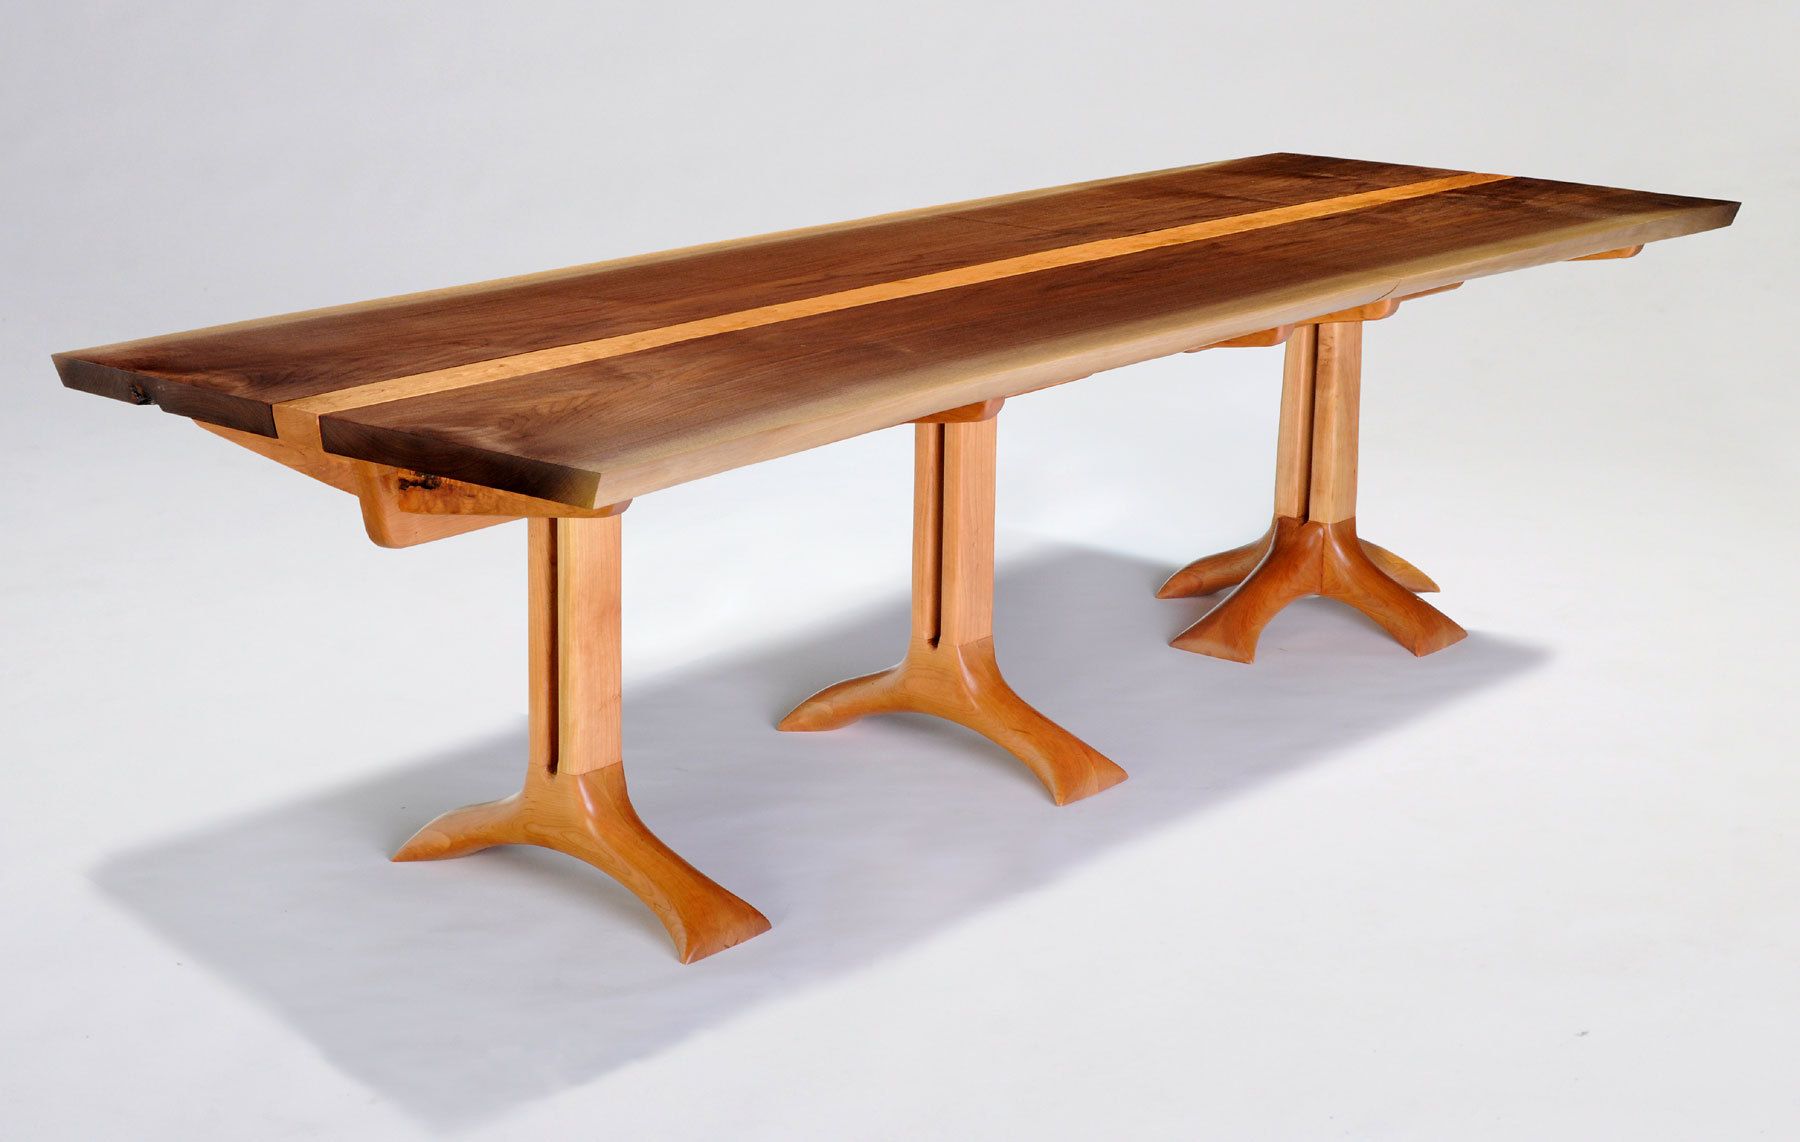 Sanctuary table and Sanctuary pedestal table